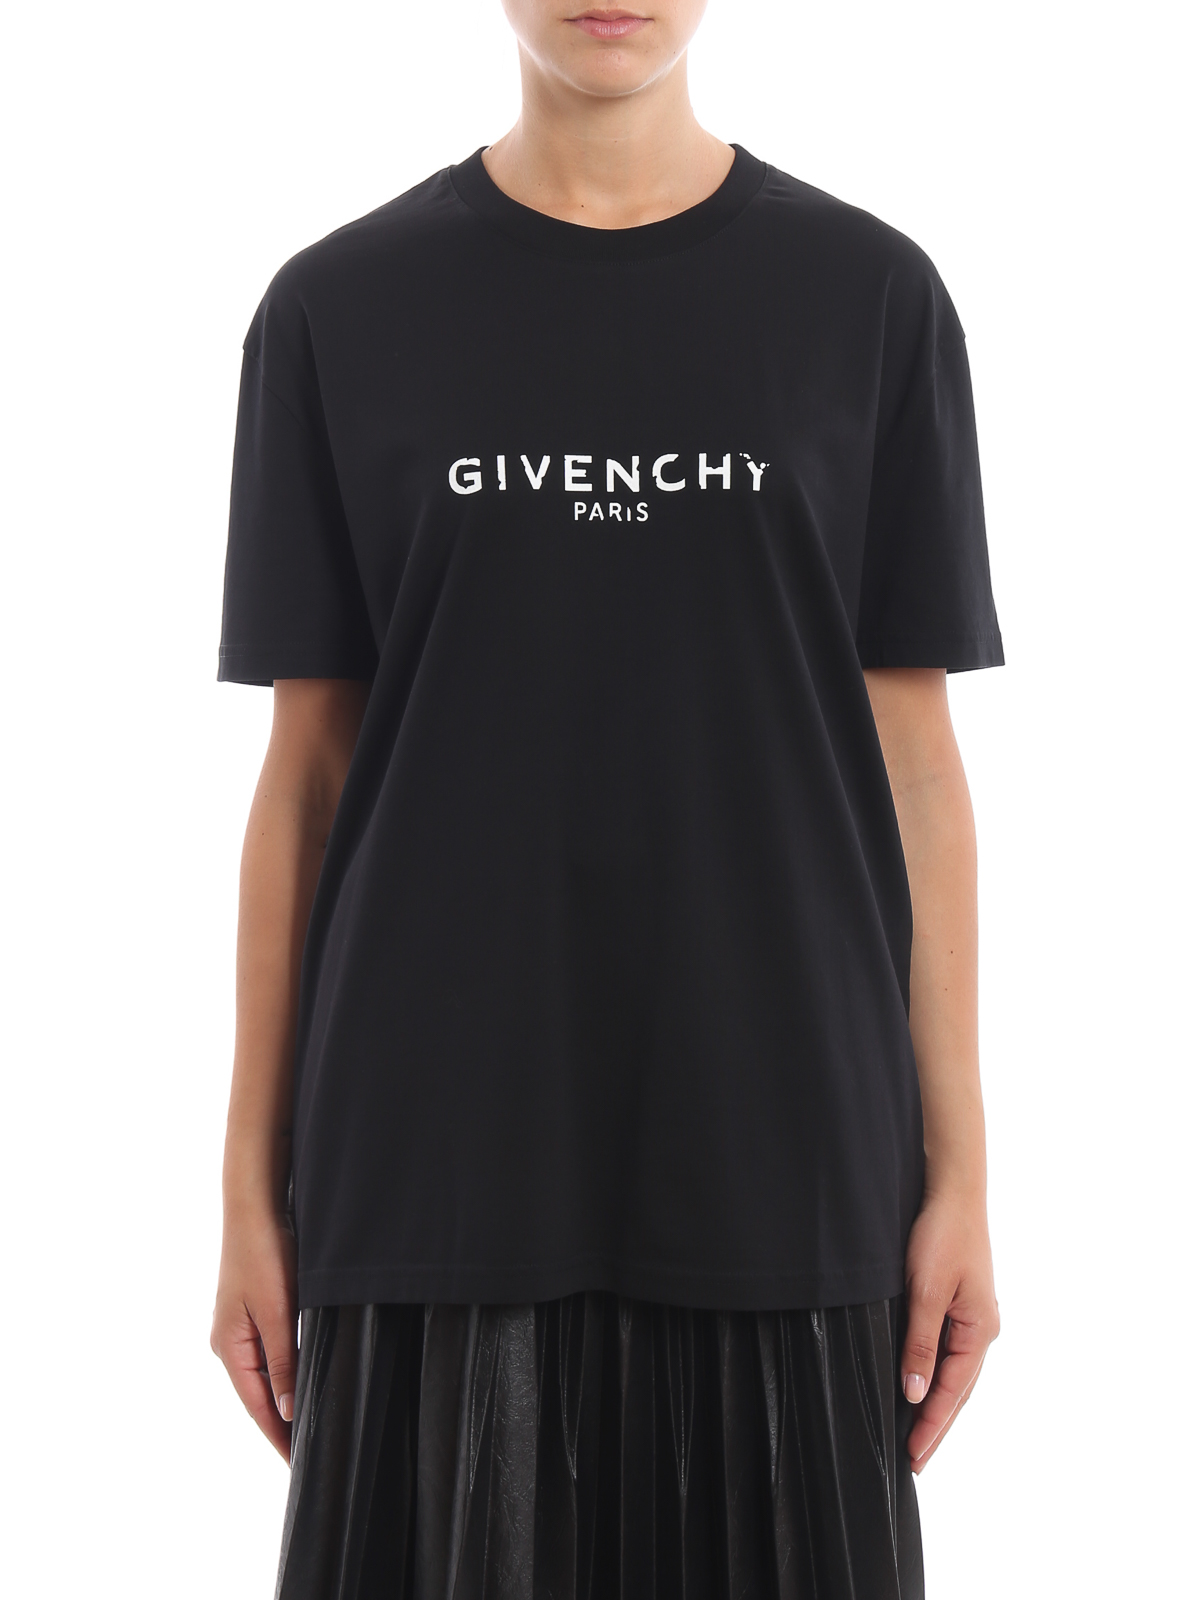 givenchy t shirt logo